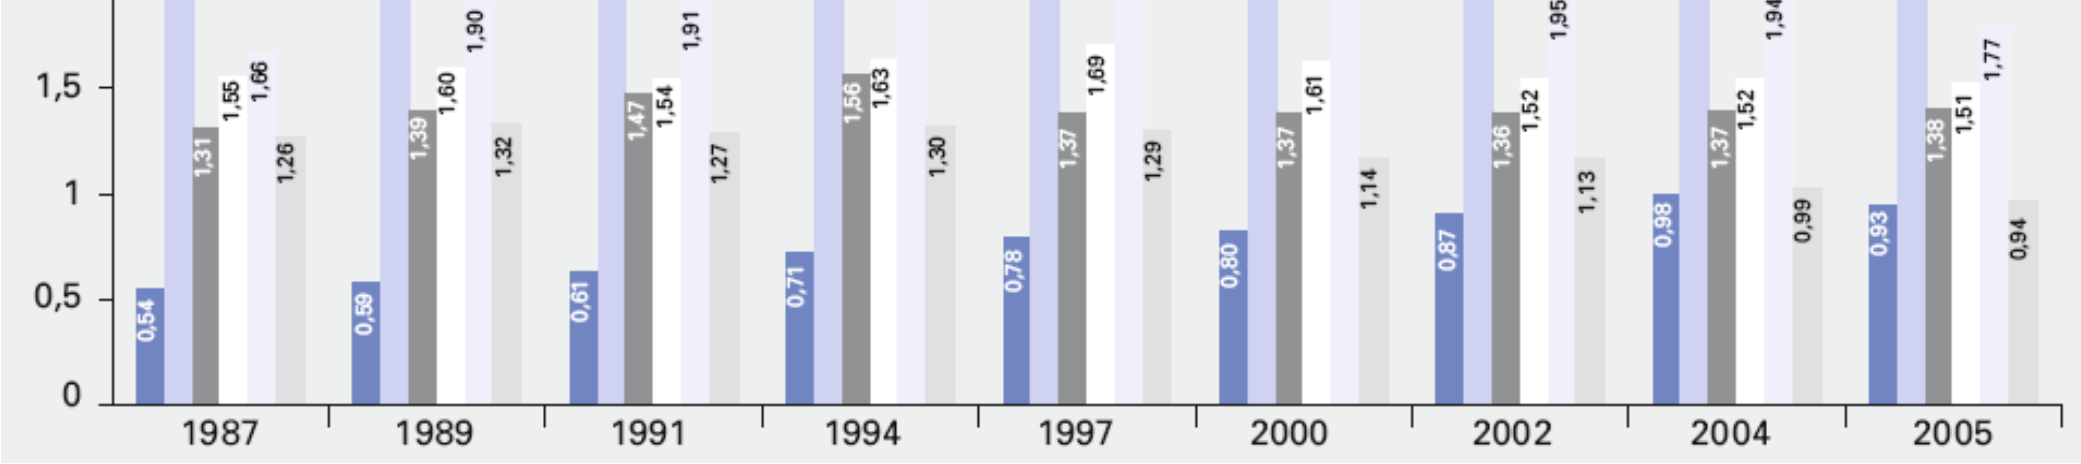 Trend zur stationären Versorgung seit 1987 (GKV) Krankenhausaufenthaltsdauer bei F-Diagnosen im Ø zwischen 8,4 und 41,4 Tage, stetig steigend pro Jahr gesamt, bei allgemein rückläufiger